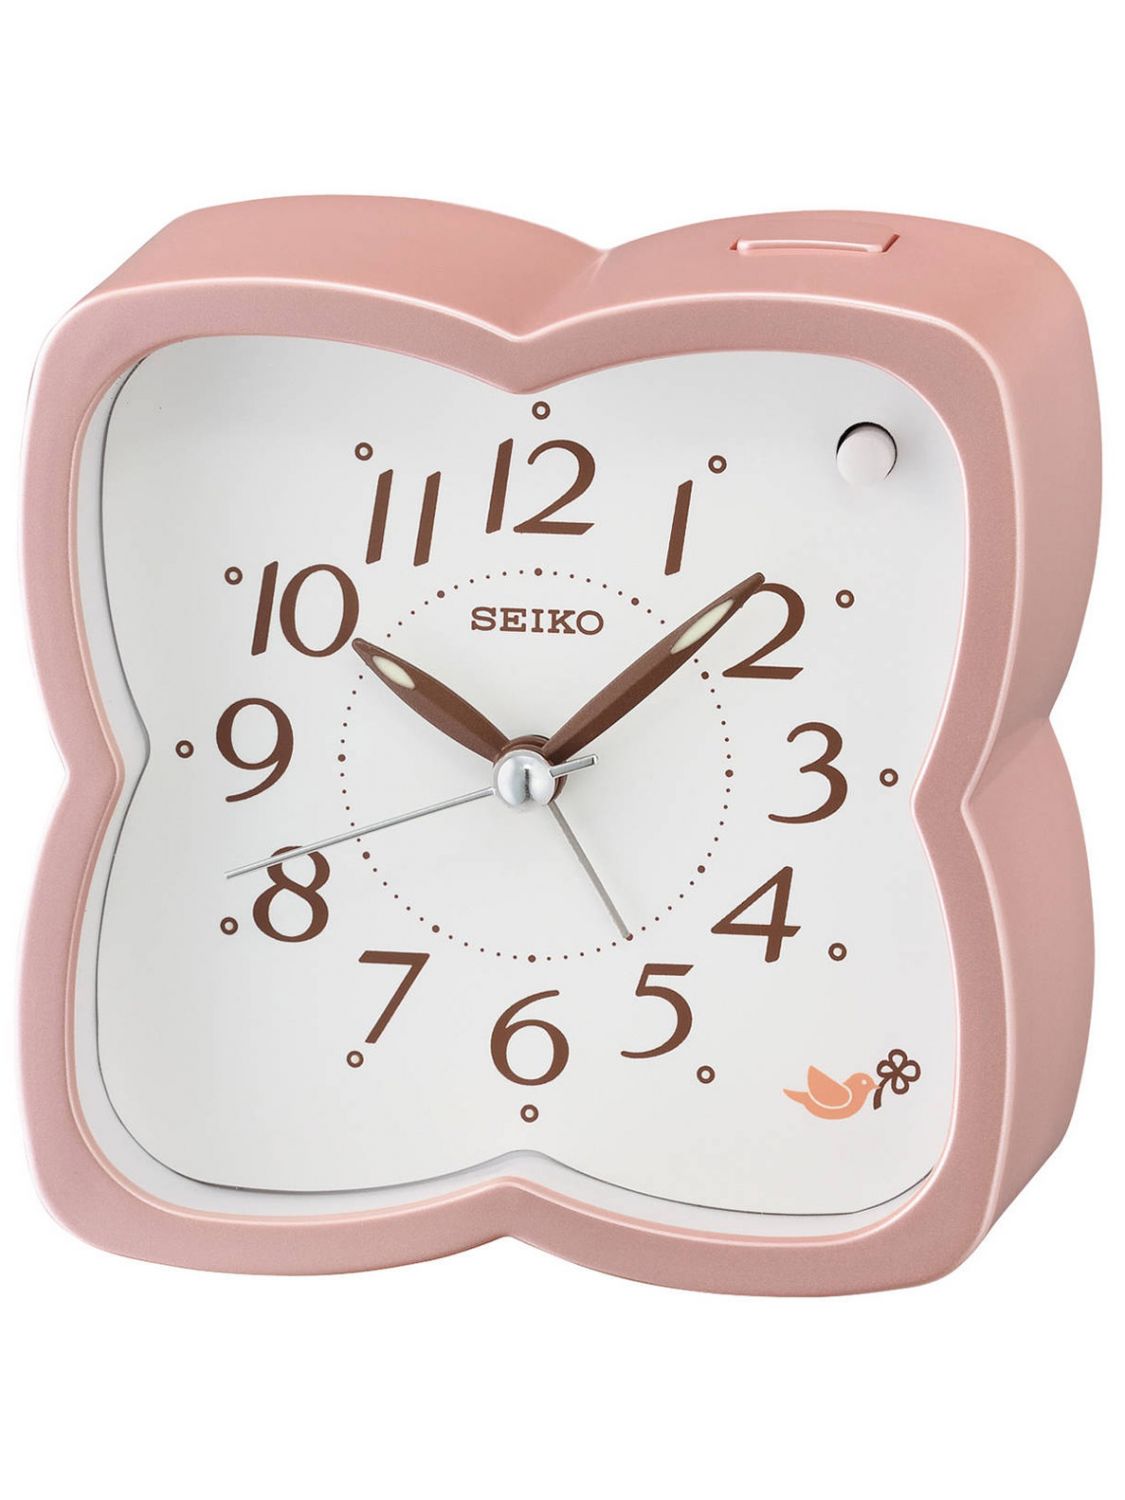 SEIKO QHP009P Alarm Clock with Bird Sounds • uhrcenter